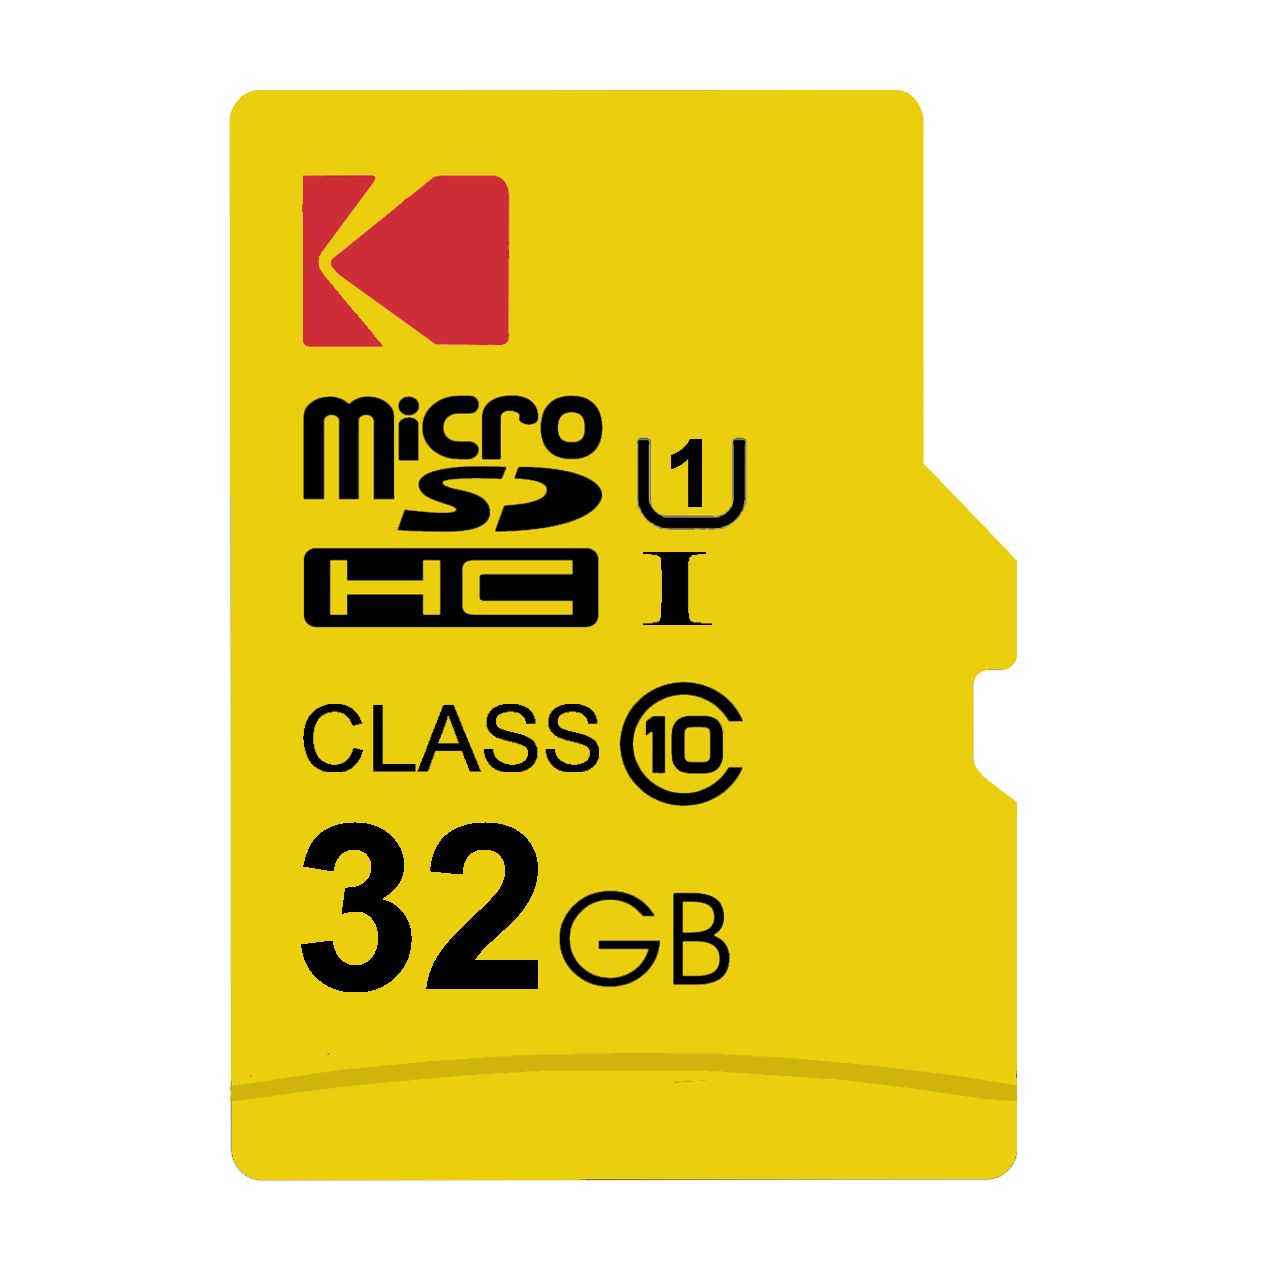 کارت حافظه microSDHC کداک مدل Premium Performance کلاس 10 استاندارد UHS-I U1 سرعت 85MBps ظرفیت 32 گیگابایت